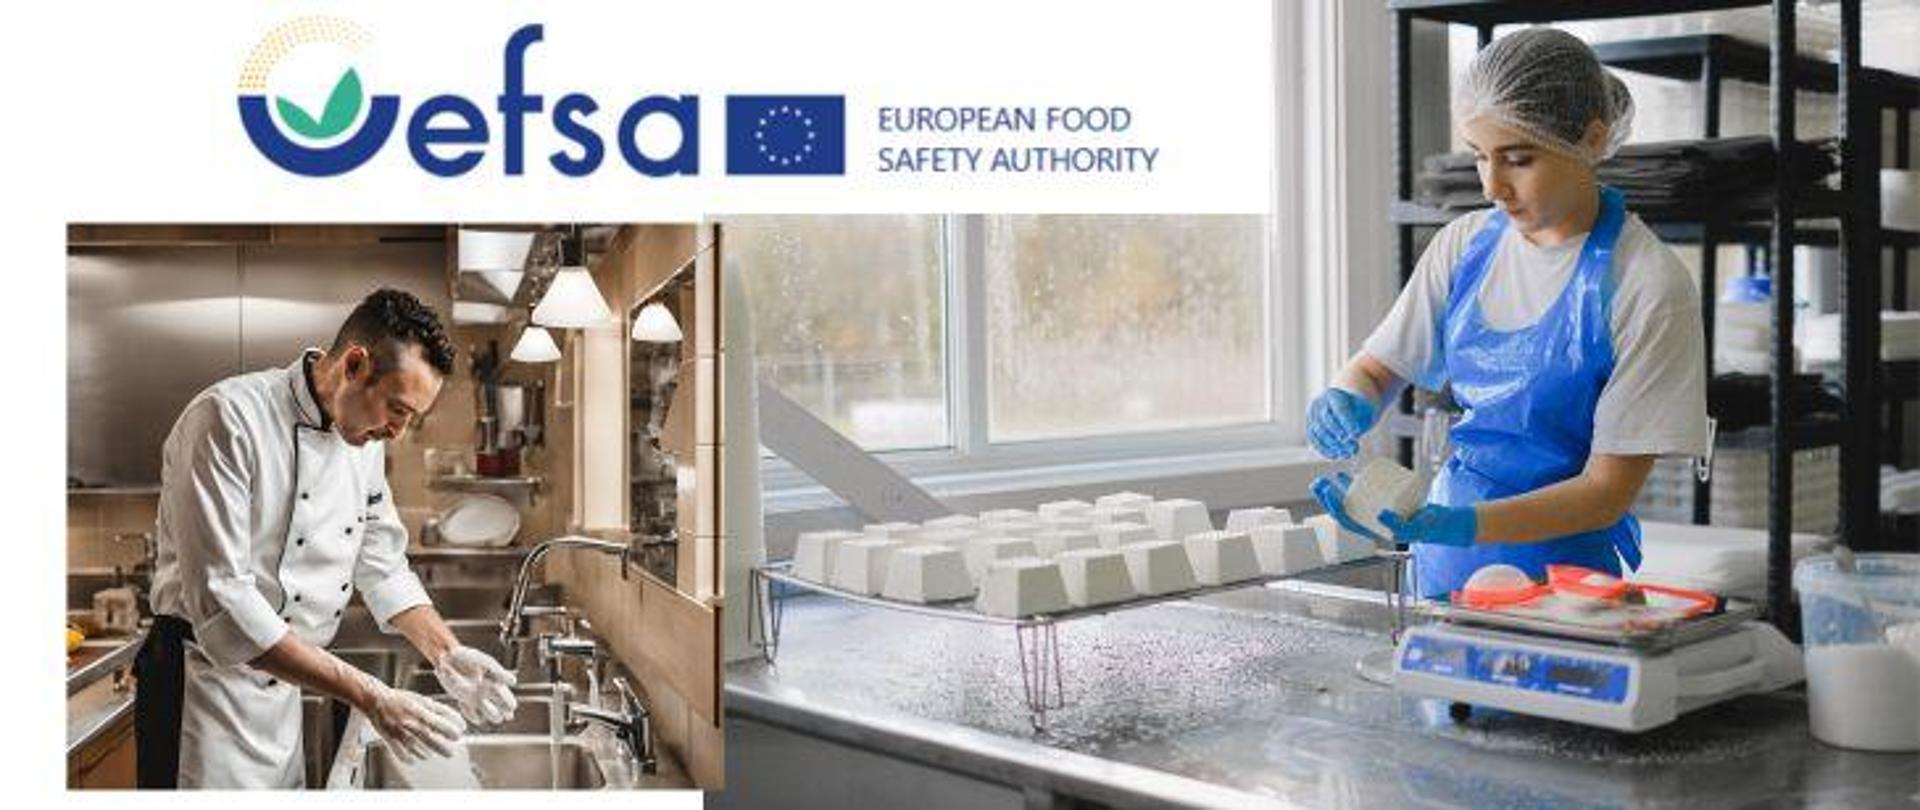 Po lewej stronie kucharz w białym fartuchu w kuchni myje brudne ręce pod zlewem. Po prawej stronie pani w zakładzie produkcyjnym ubrana w białą koszulkę, niebieski fartuch w niebieskich rękawiczkach lateksowych i czepku na głowie podczas pracy wytwarzania sera białego. Na górze logo Europejskiego Urzędu ds. Bezpieczeństwa Żywności.